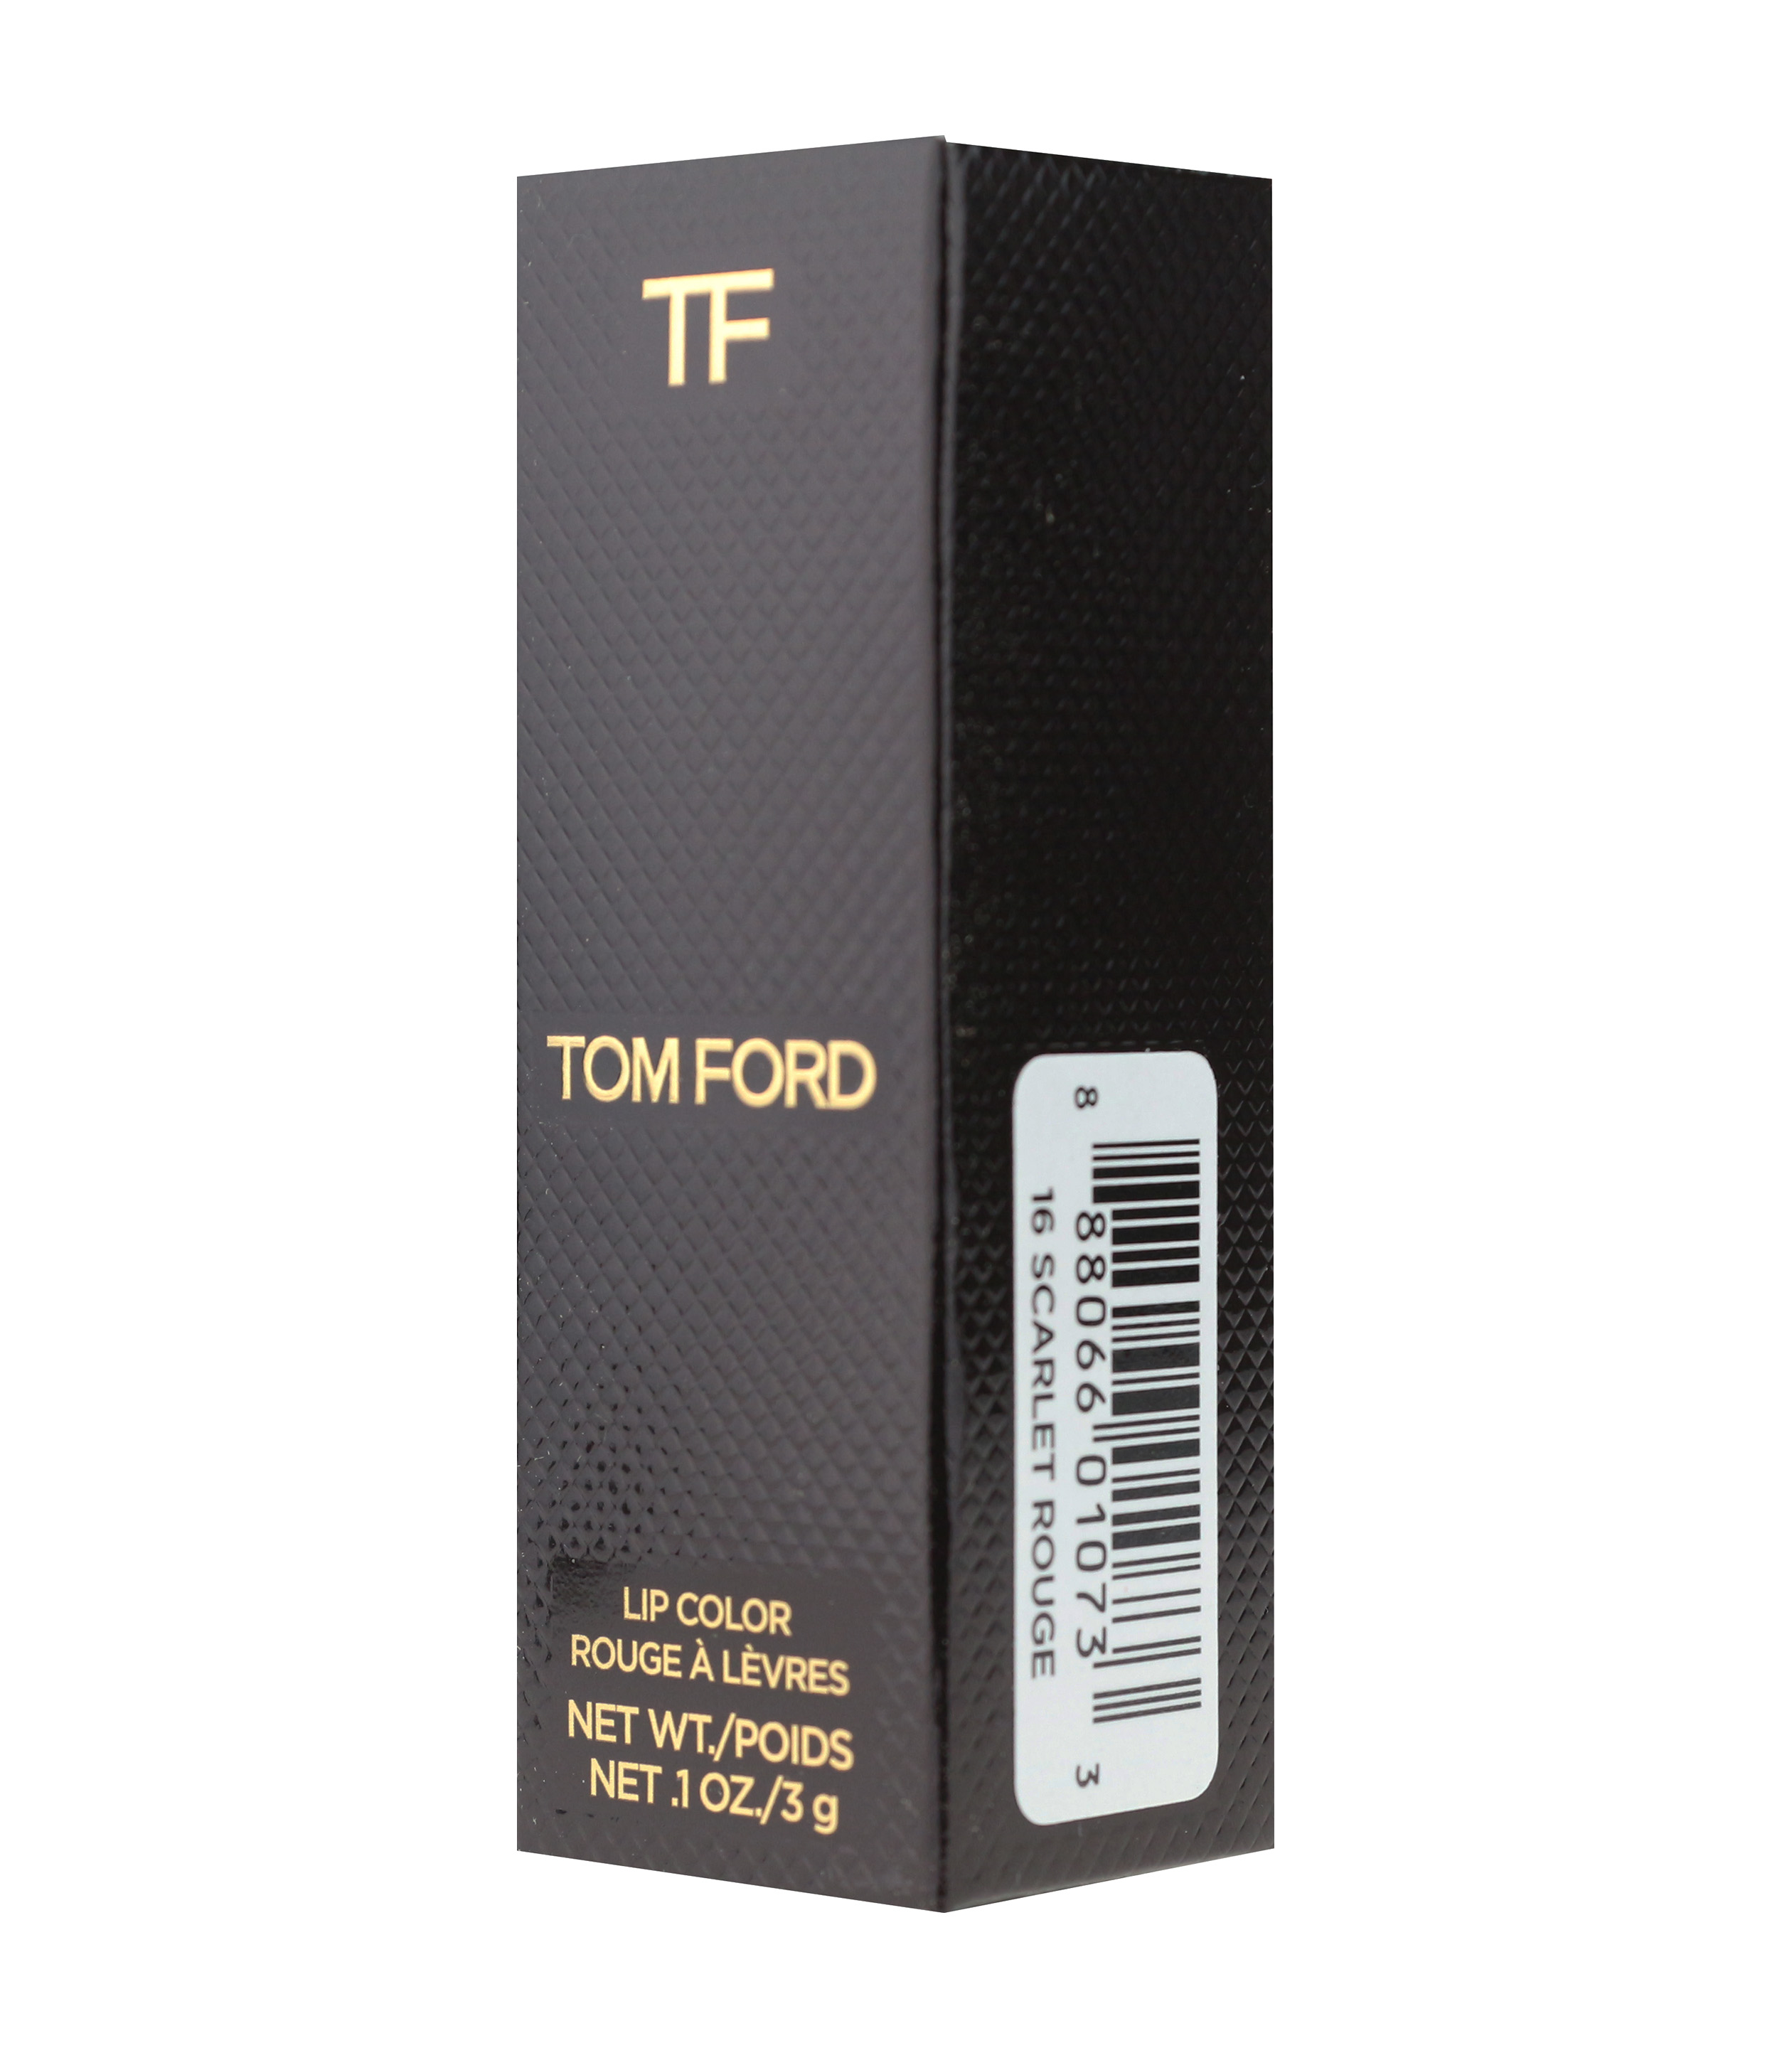 Tom Ford Lip Color - Best Revenge #37 -- 0.1oz, 3g | eBay